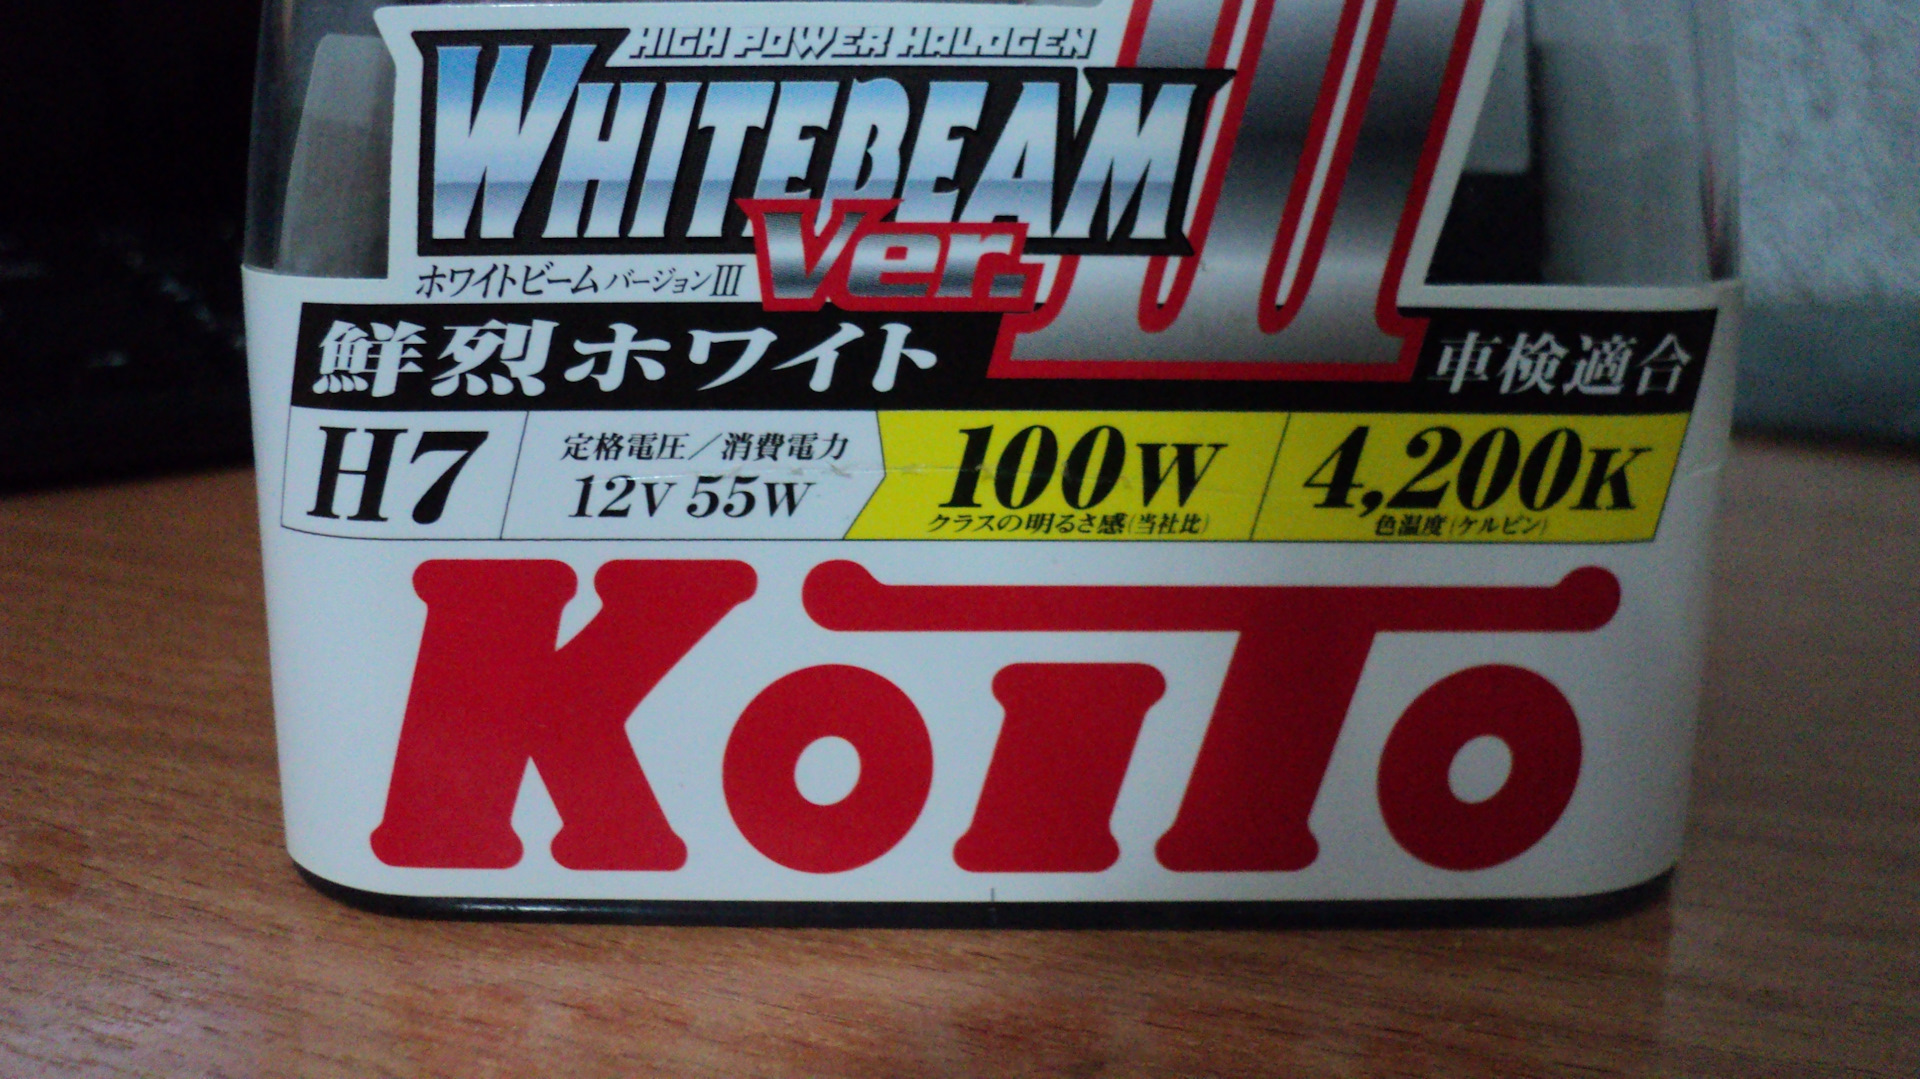 Koito Whitebeam 4200k drive2. Koito whitebeam 12v 55w